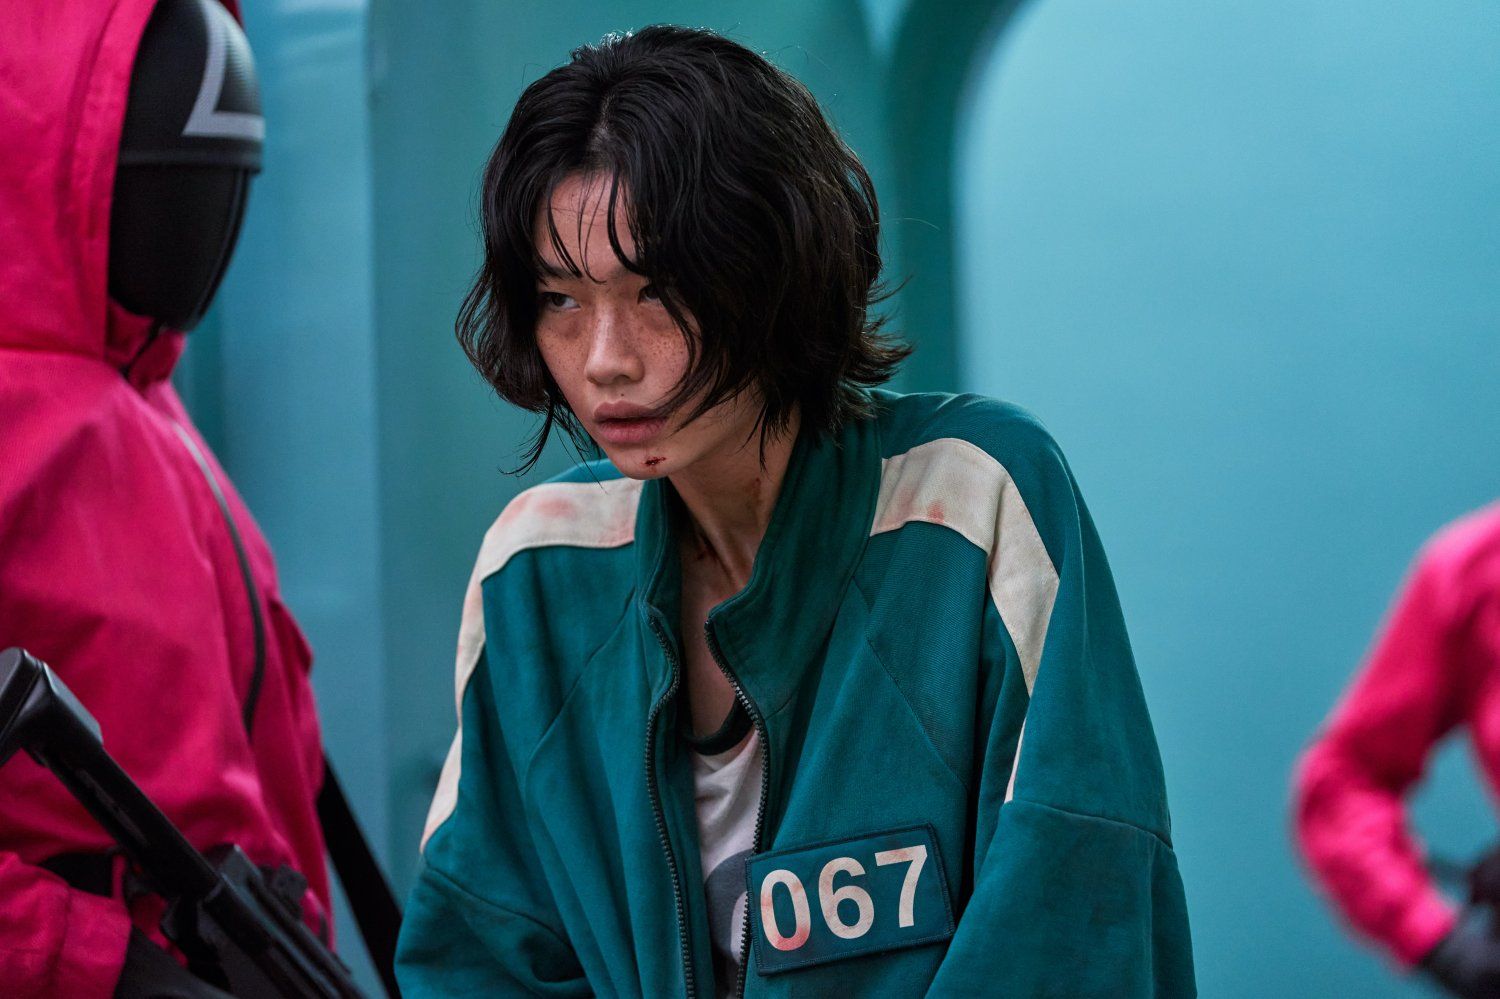 Serial Squid Game garapan Korea raih 14 nominasi Emmy Awards 2022, termasuk untuk aktris Jung Ho Yeon.